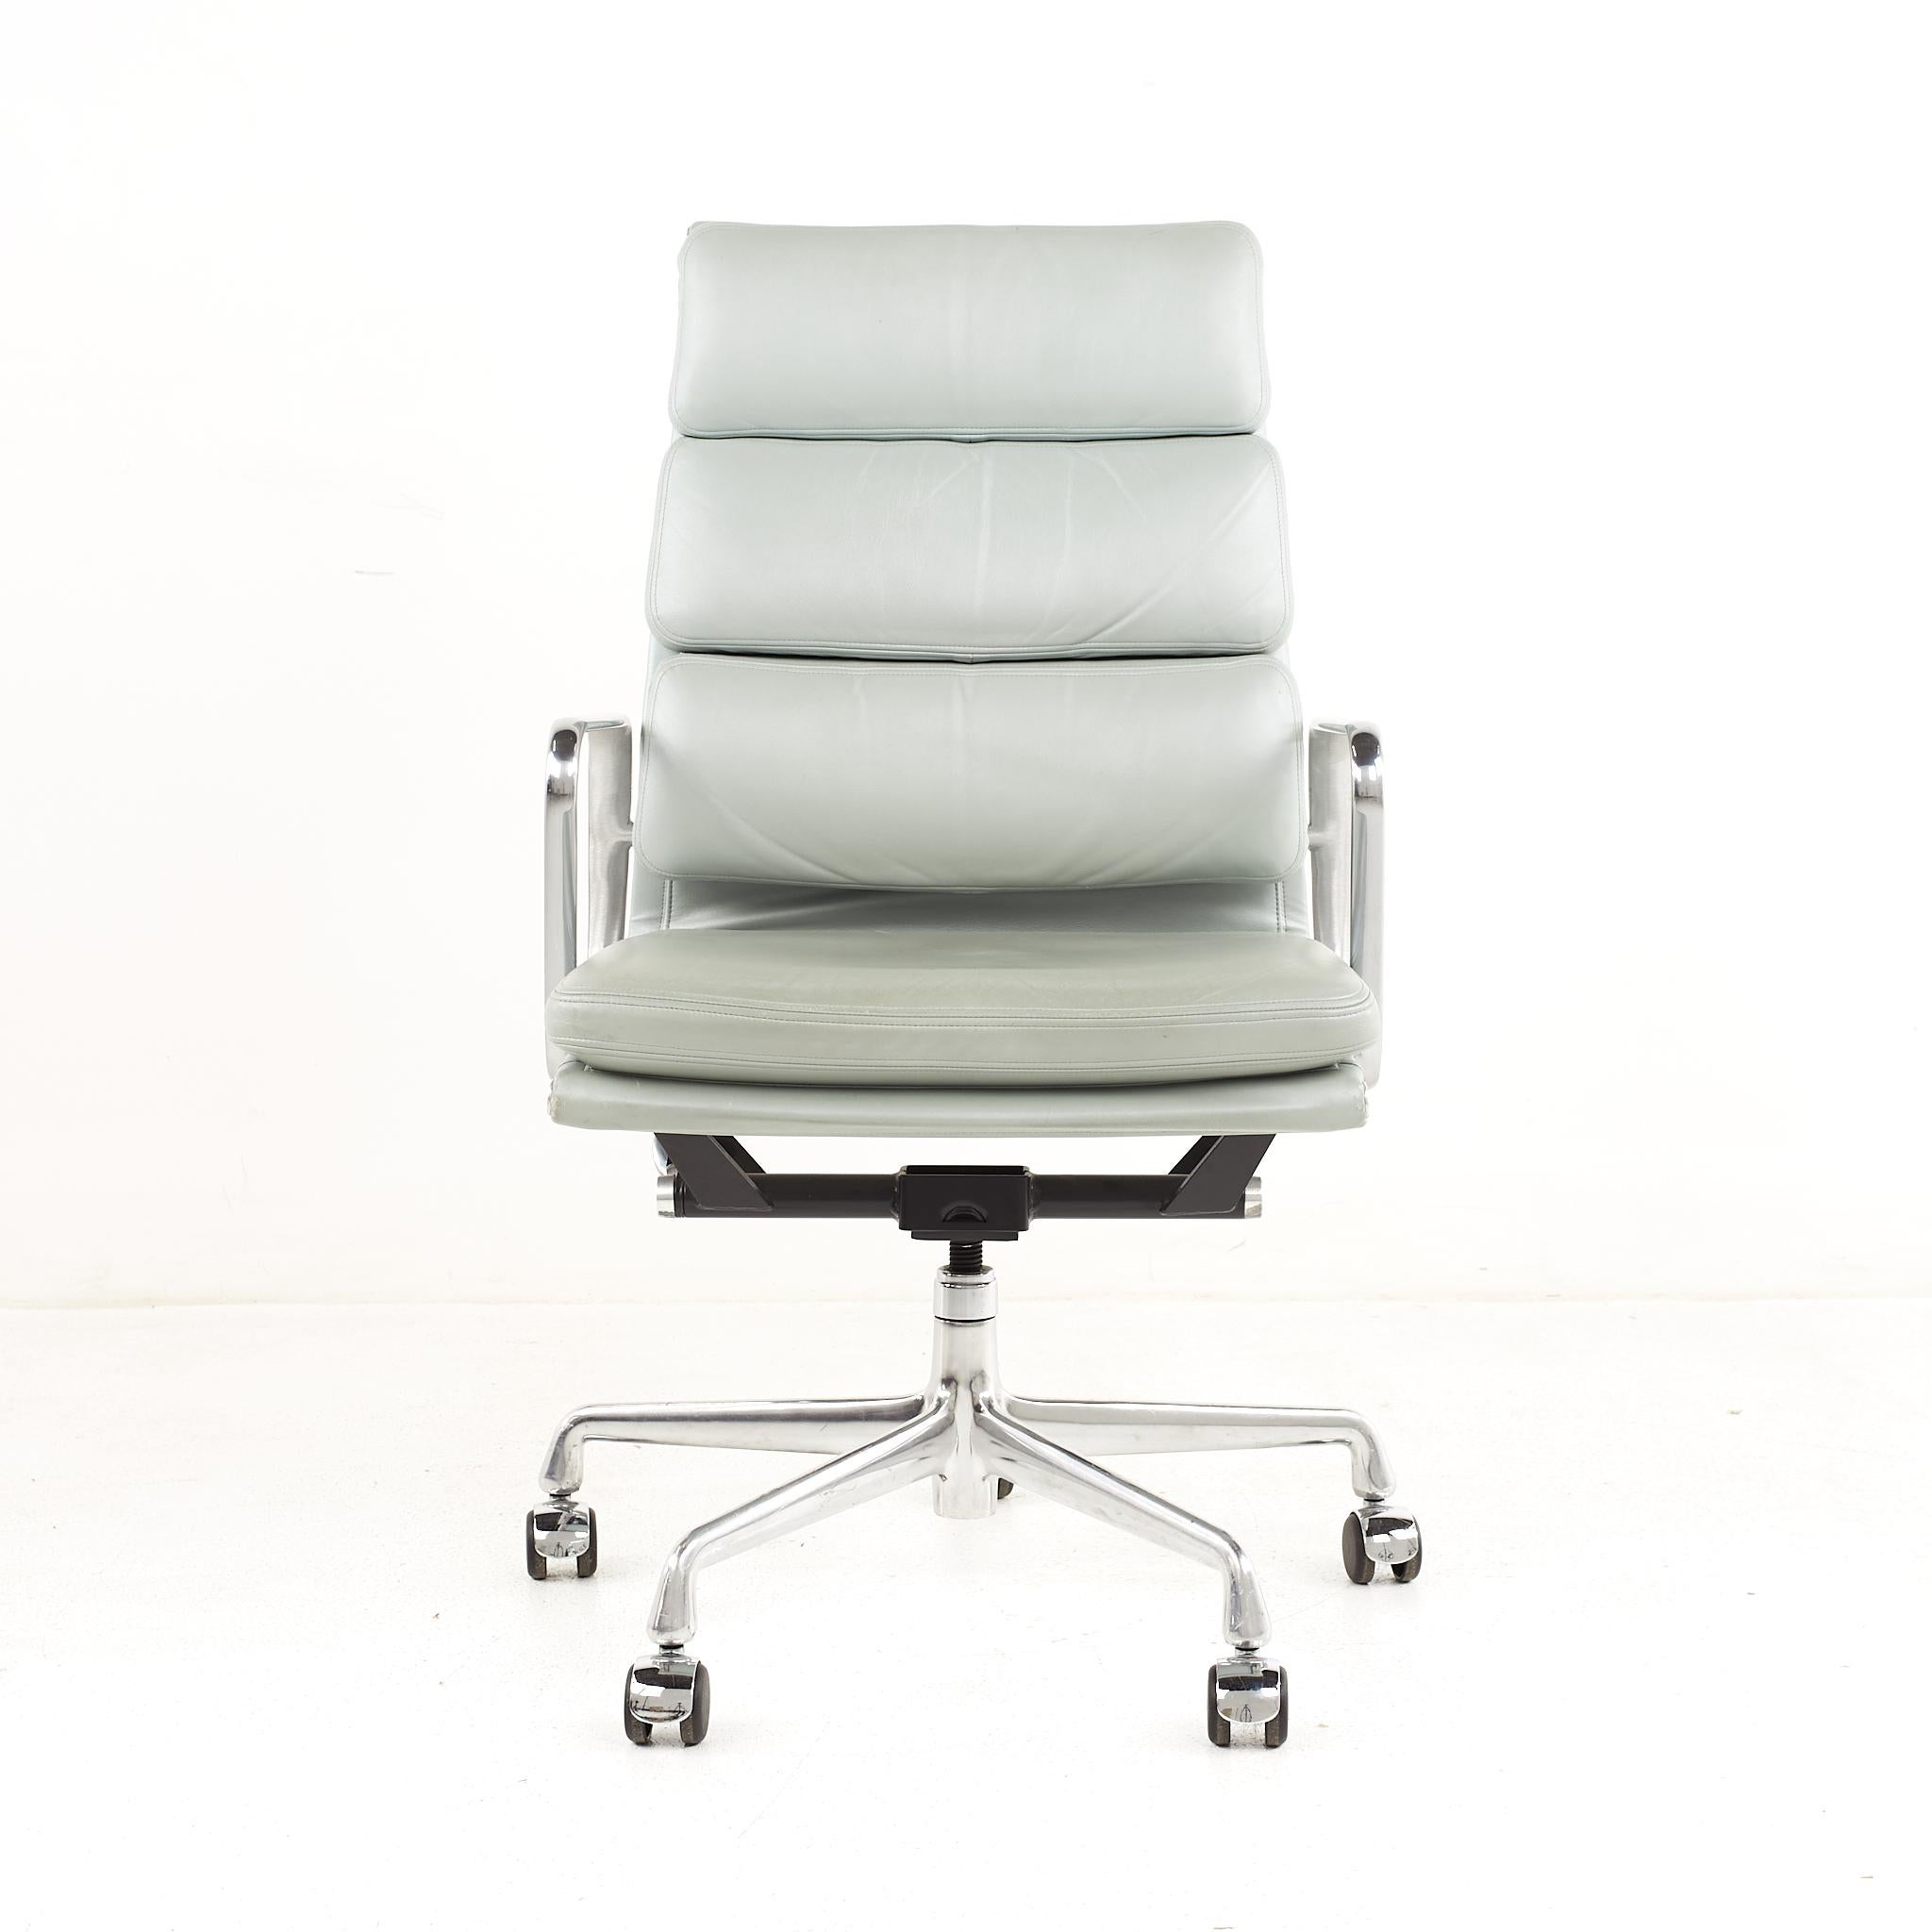 Eames-Stuhl aus der Mitte des Jahrhunderts mit weichem pad.

Der Stuhl misst: 22 breit x 20,5 tief x 39,5 hoch, mit einer Sitzhöhe von 19,5 Zoll und Armhöhe von 25,25 Zoll

Alle Möbelstücke sind in einem so genannten restaurierten Vintage-Zustand zu